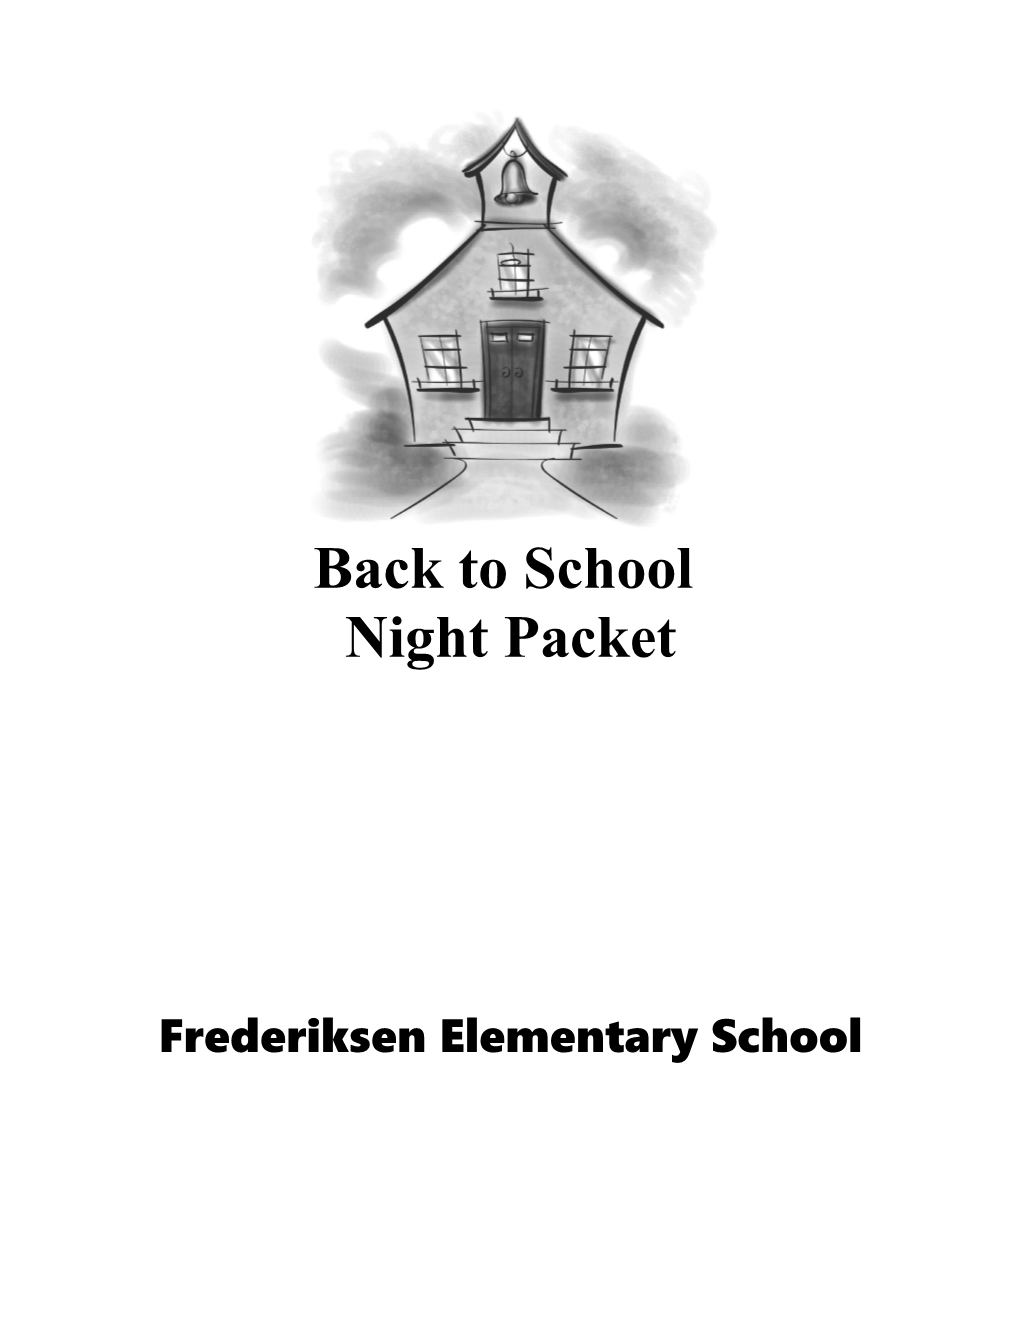 Frederiksen Elementary School